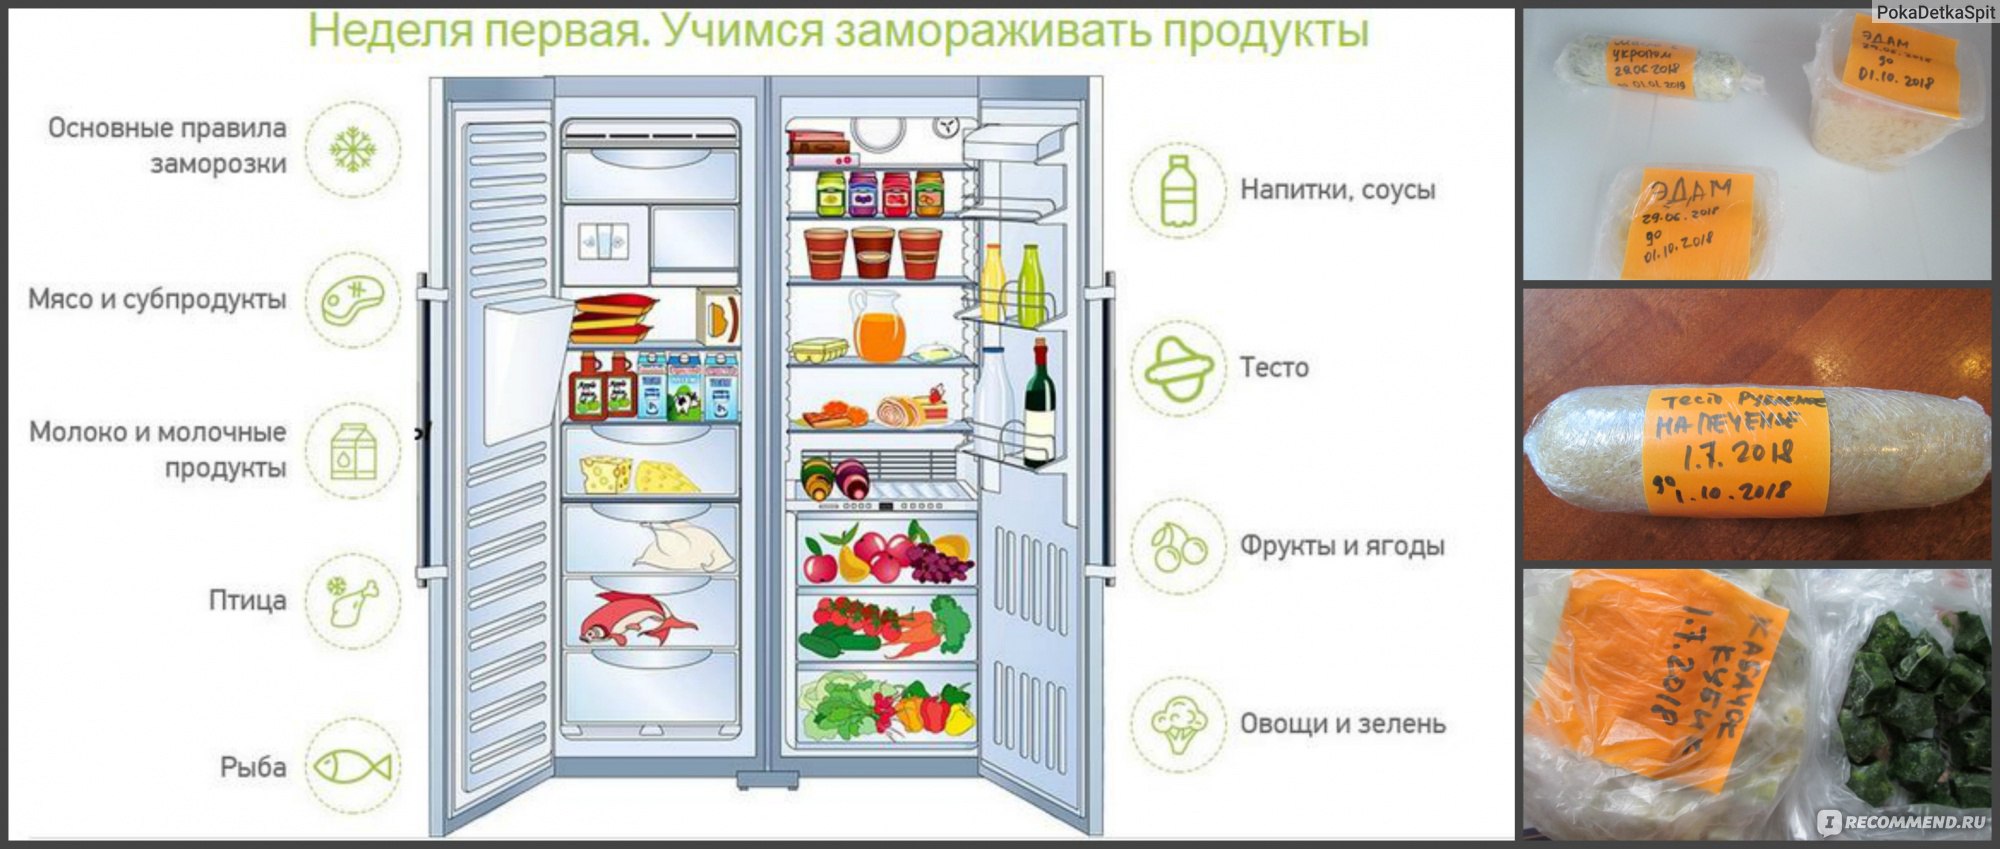 Продукты без срока годности. Холодильник с продуктами. Хранение продуктов в морозильной камере. Хранение продуктов в морозилке. Хранение продуктов в холодильнике.